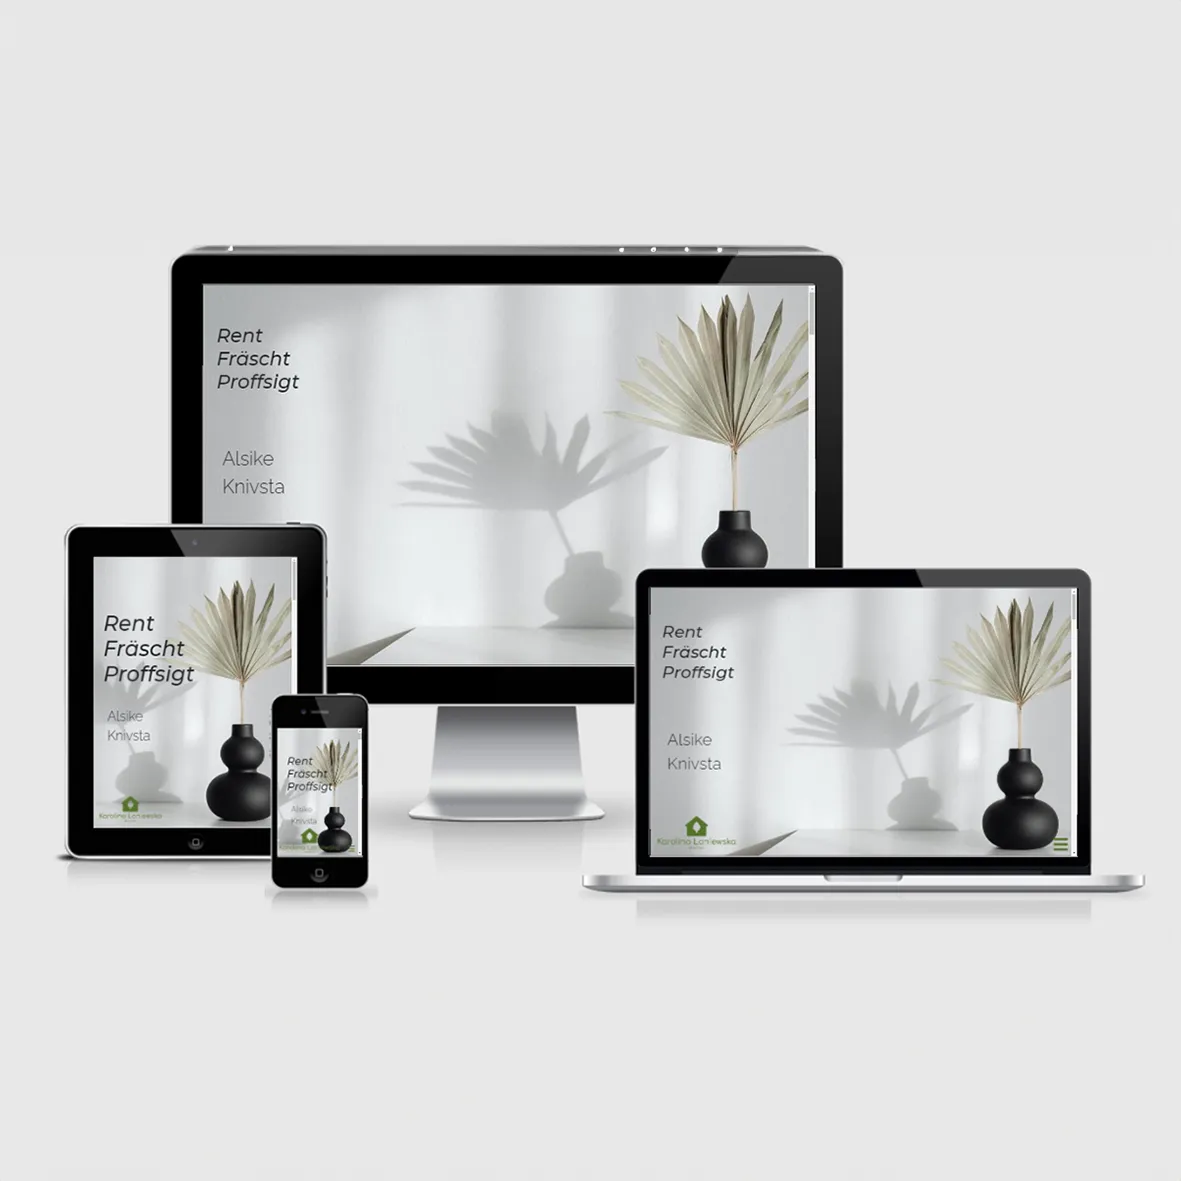 Blue Bliss - Grafisk Design och Webbdesign i Sörmland. Kreativa lösningar för logotyper, affischer, responsiva webbplatser och Grafisk rekvisita. Utforska vår konstnärliga värld!